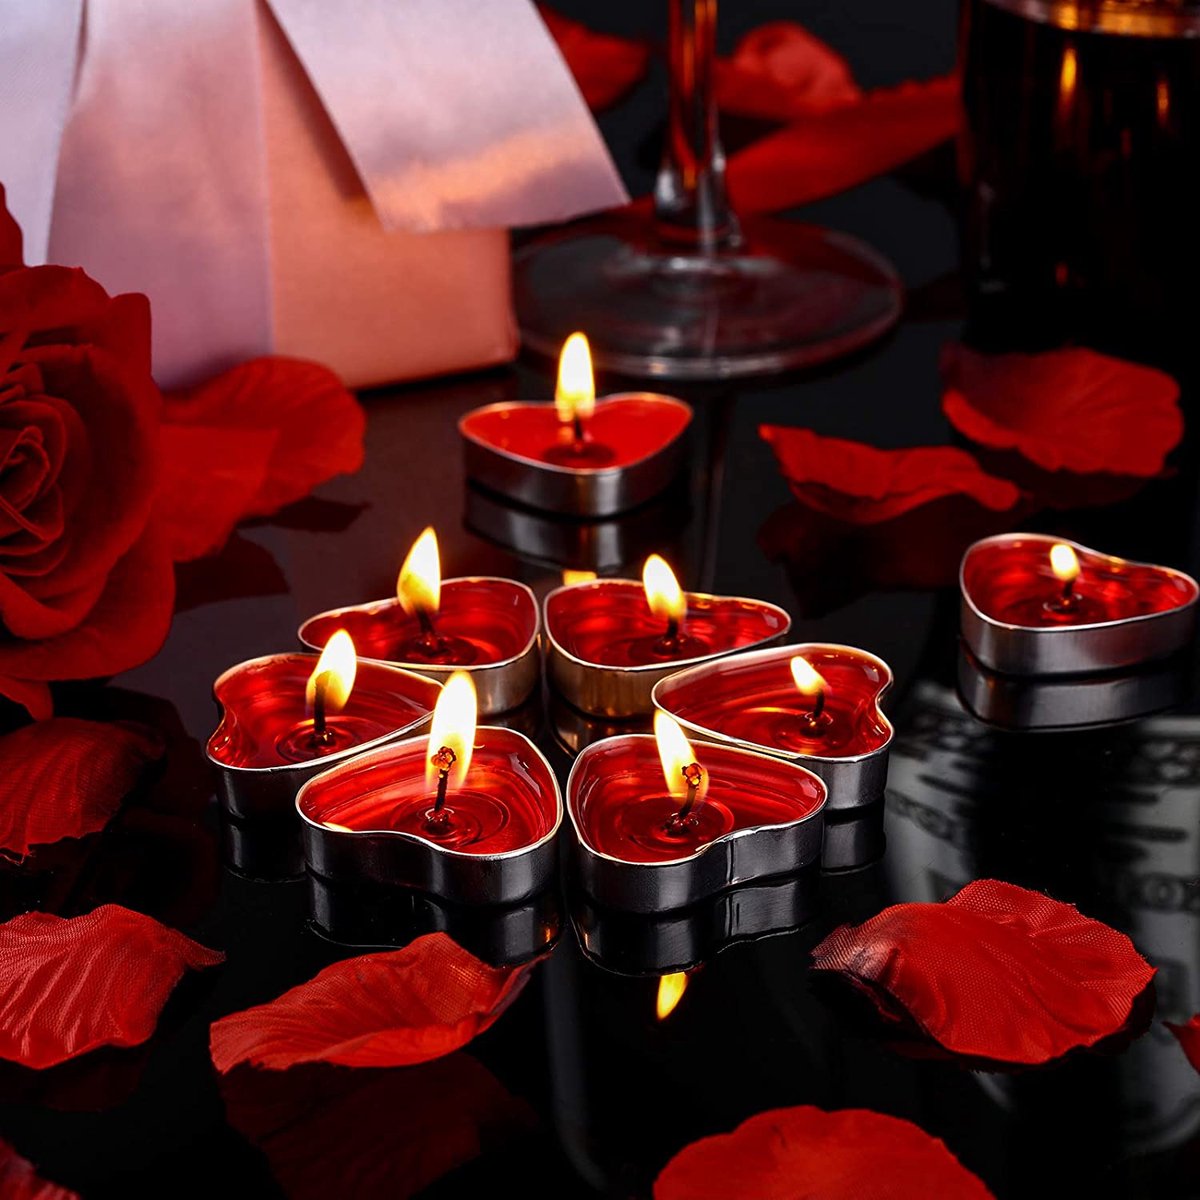 décor de bougies romantiques vintage. image tonique et bruitée